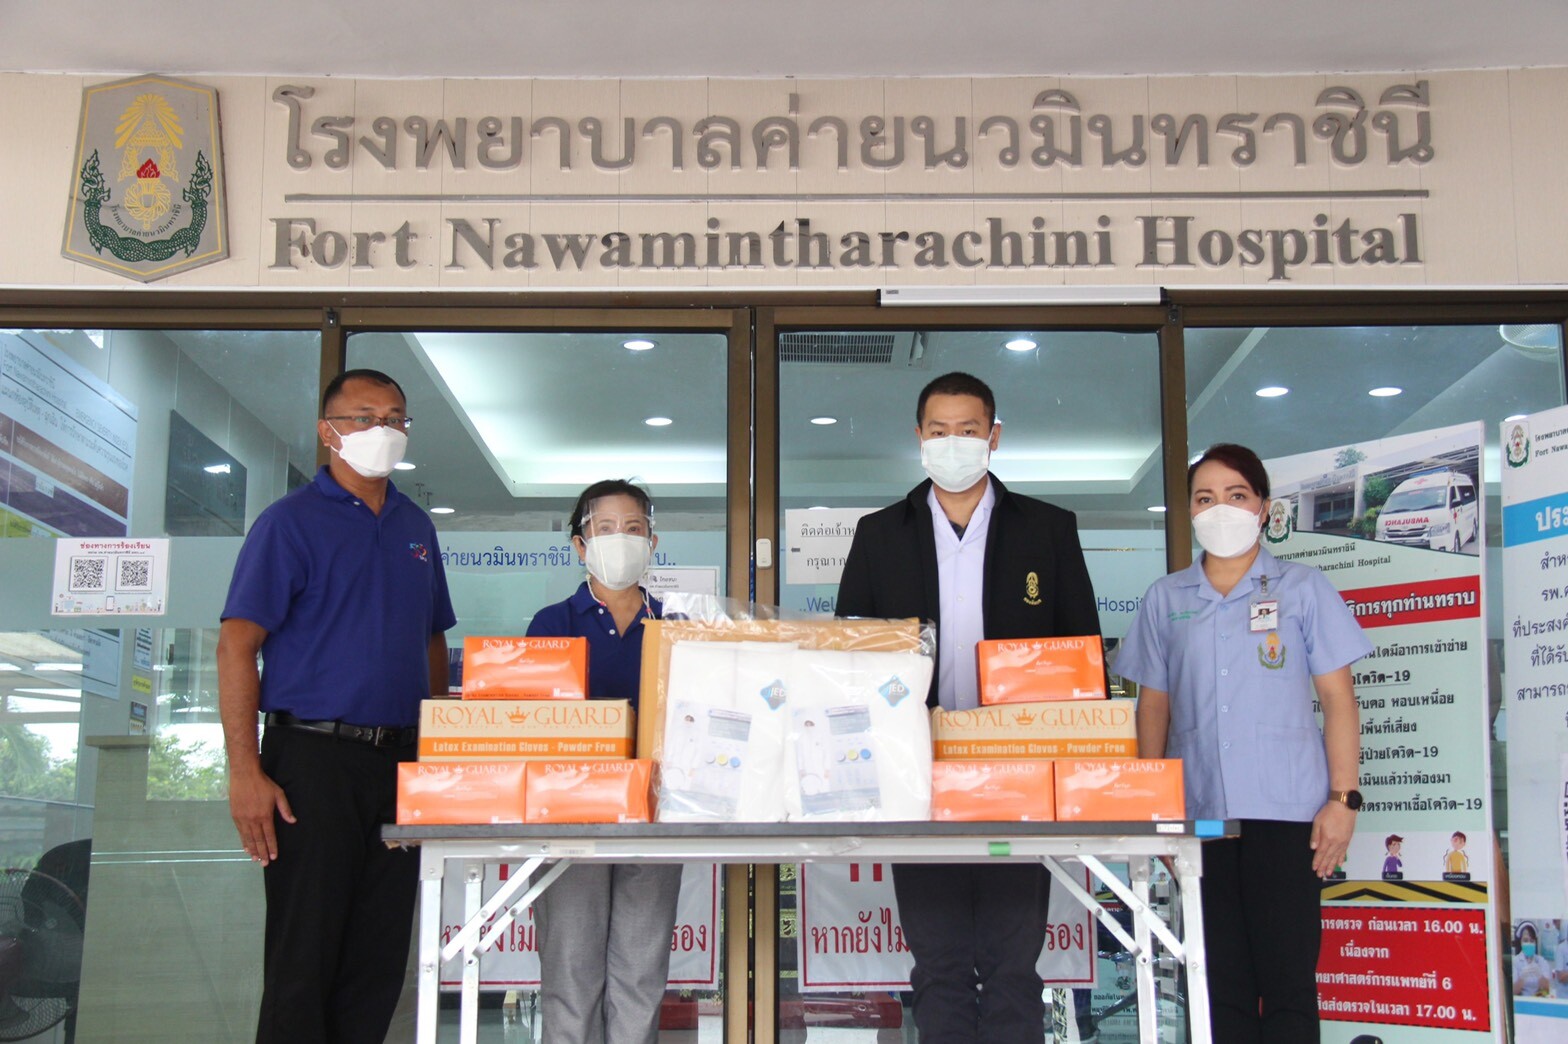 ม.ศรีปทุม ชลบุรี รวมน้ำใจ มอบชุด PPE โรงพยาบาลค่ายนวมินทราชินี สู้ภัย COVID -19